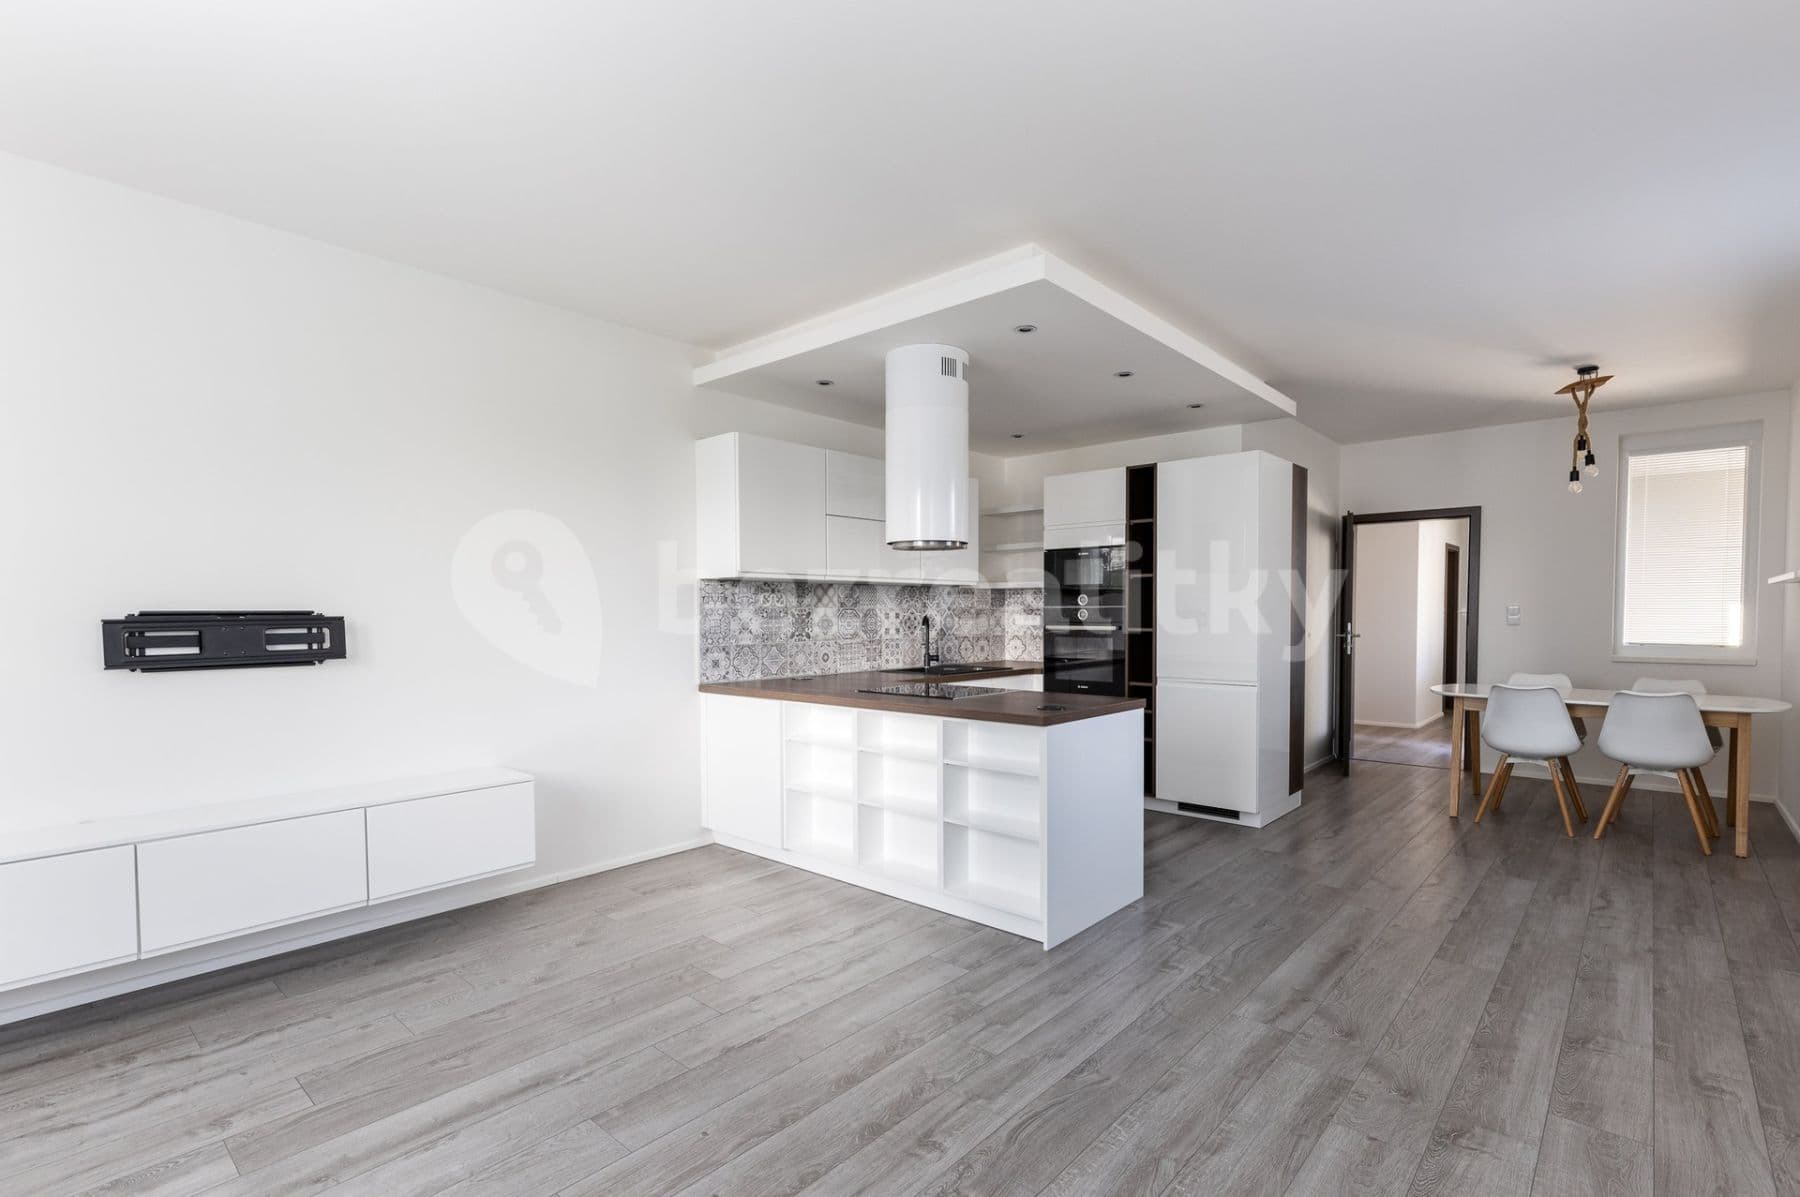 3 bedroom with open-plan kitchen flat to rent, 108 m², Zakšínská, Prague, Prague